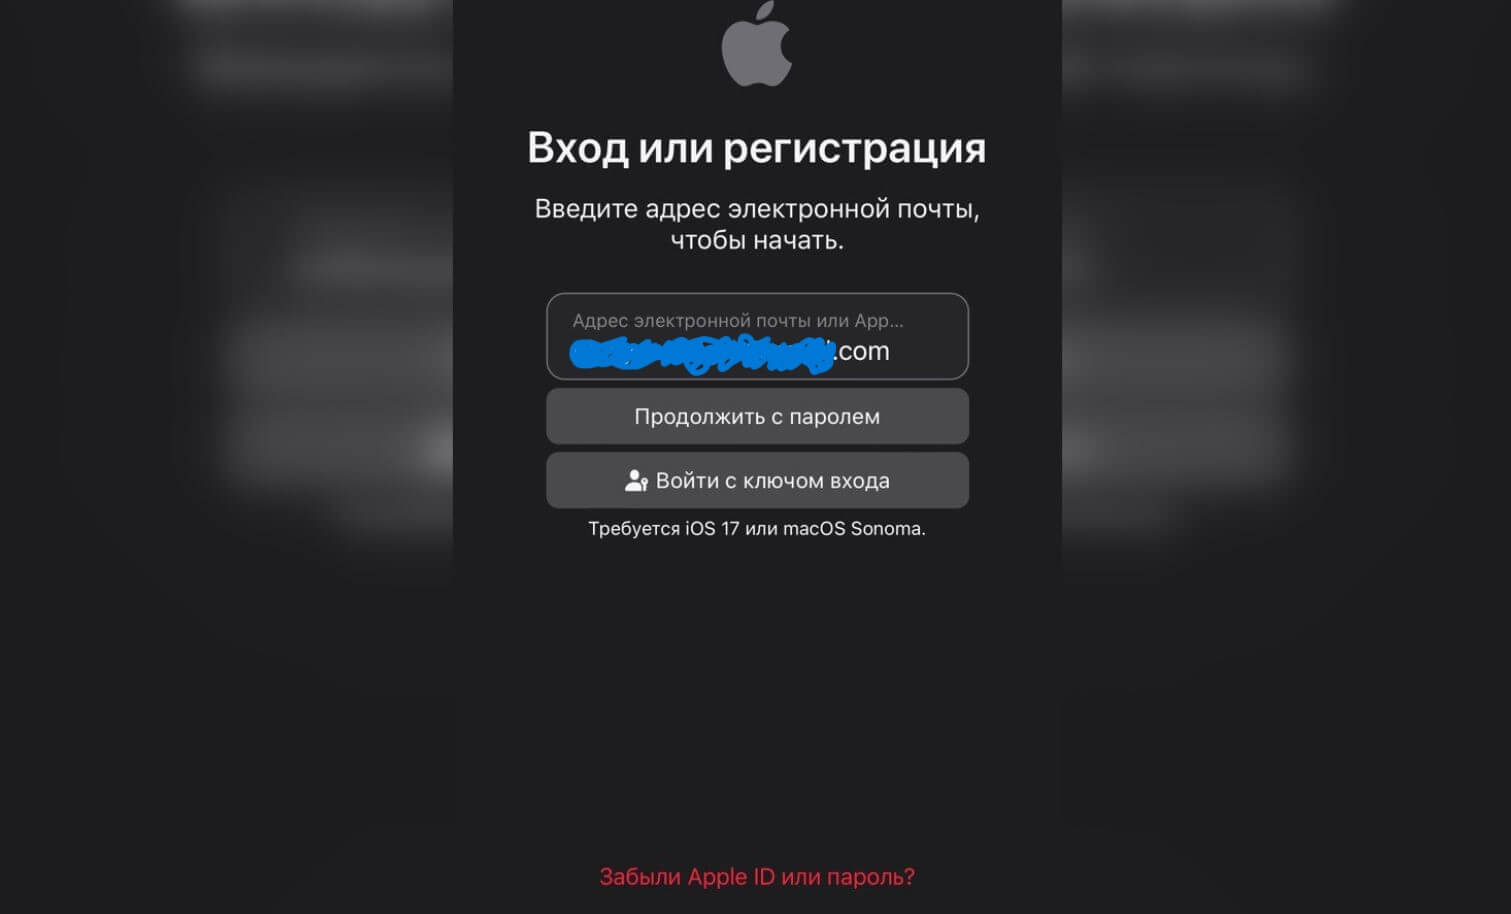 Как подключить Apple Music бесплатно. Введите данные Apple ID на Айфоне или любом другом устройстве. Фото.